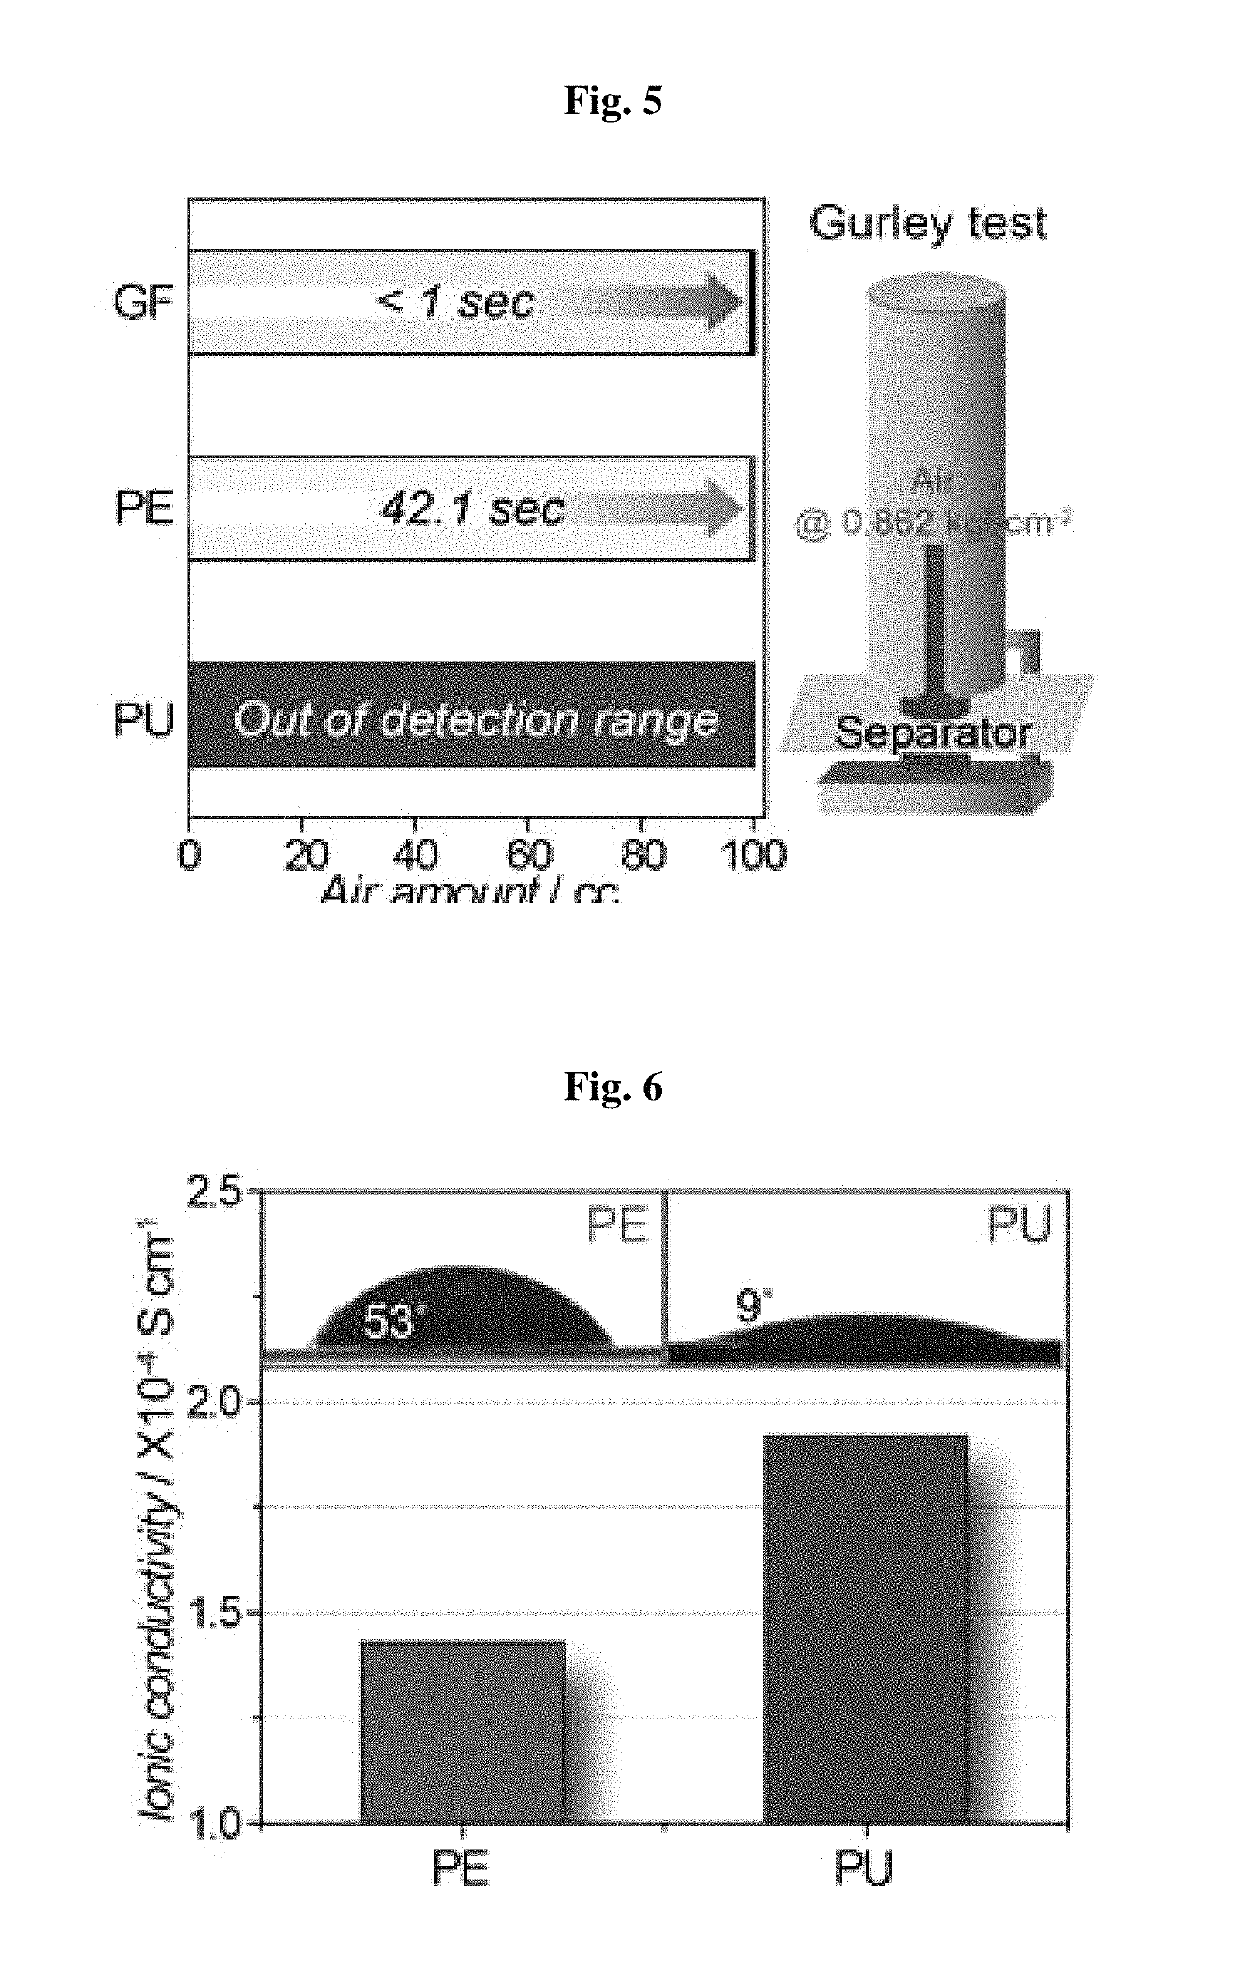 Poreless separator for lithium air battery